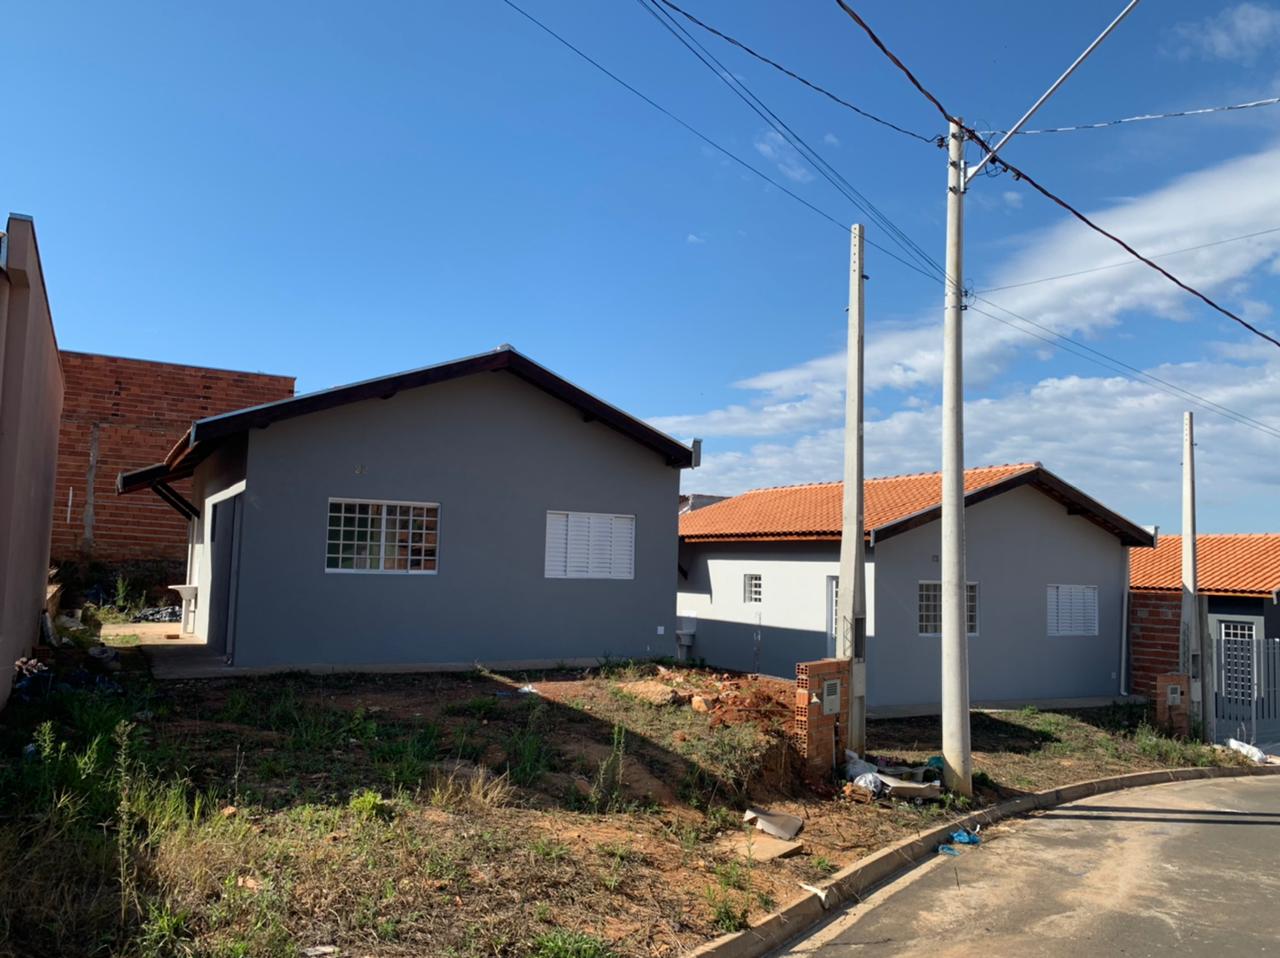 Vende-se casa - Condomínio Alexandre Marcatti -  R. do Cubatão, Cubatão - 2 dormitórios, Sala, Cozinha, banheiro e Área de serviço. R$ 160 mil